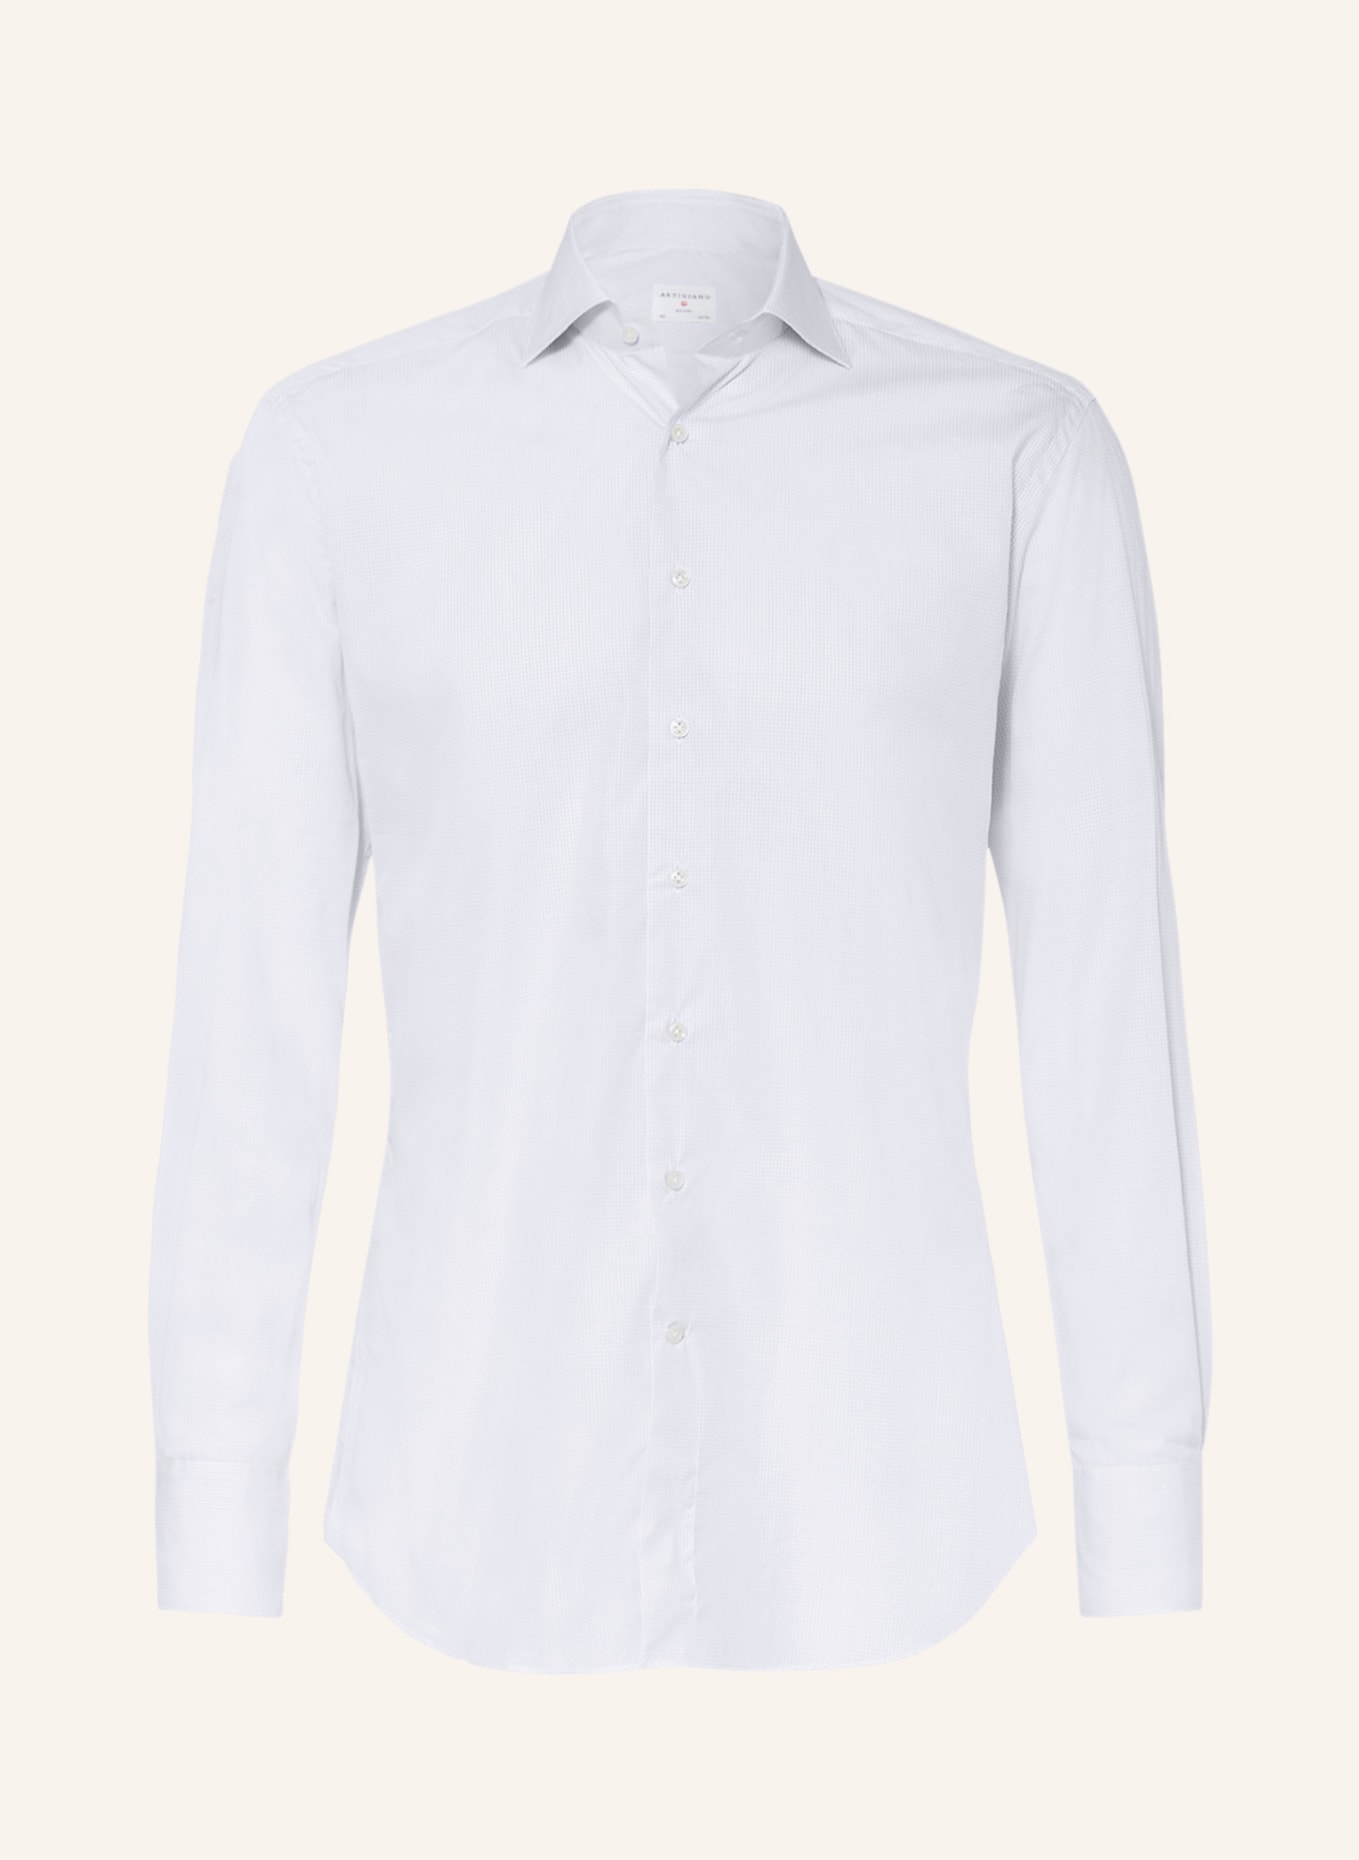 ARTIGIANO Shirt slim fit, Color: WHITE/ LIGHT BLUE (Image 1)